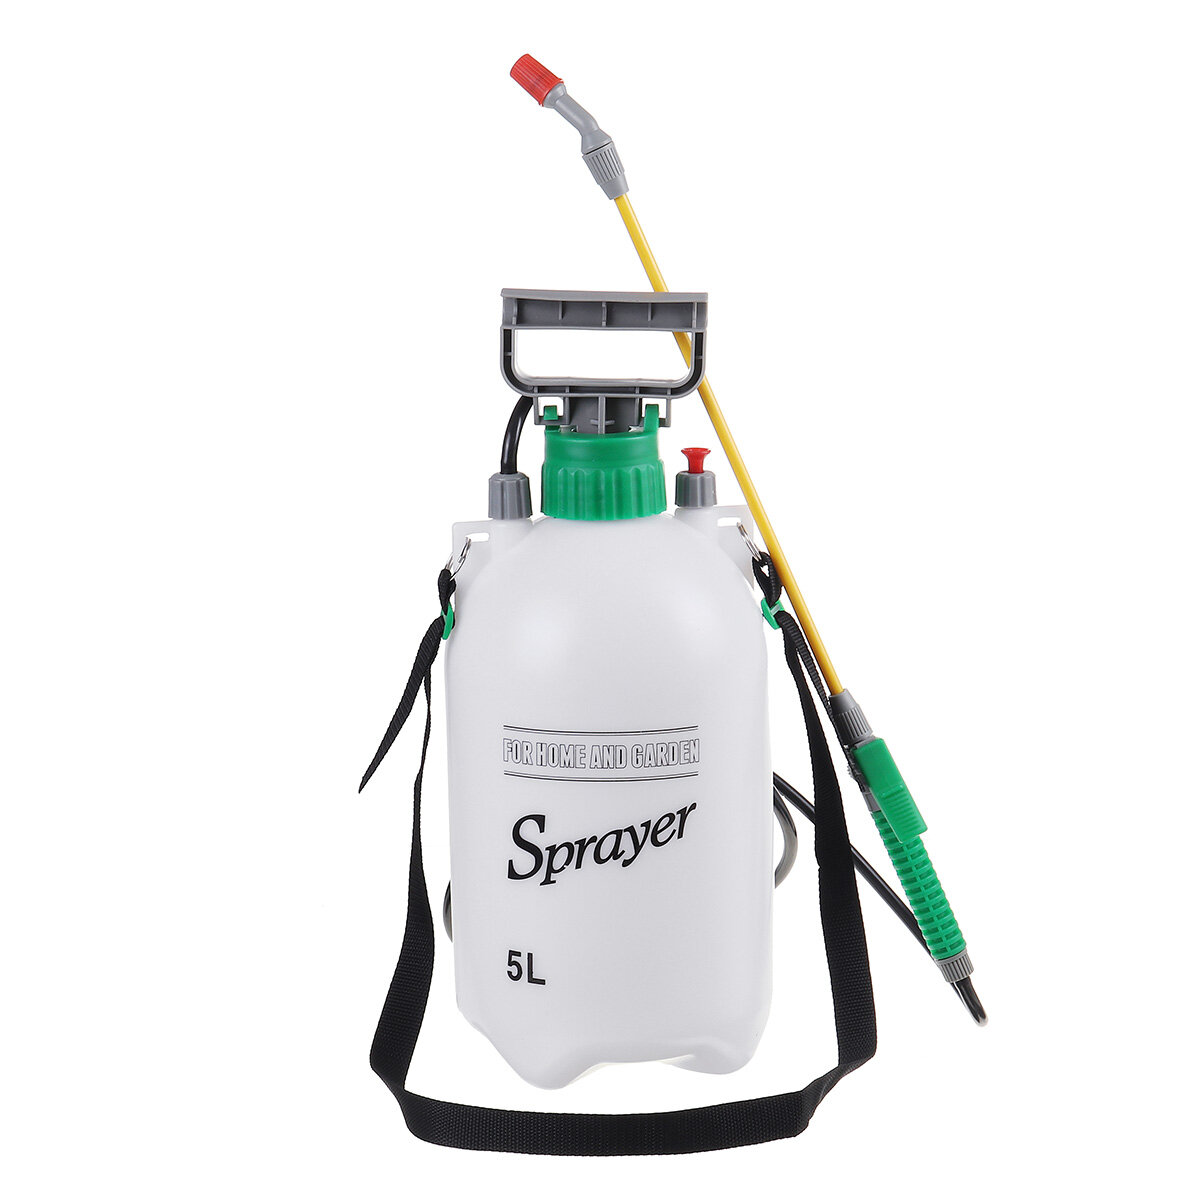 5L Liter Pressure Sprayer Canapasic Spray Weed Killer Garden Chemical Pump Jet